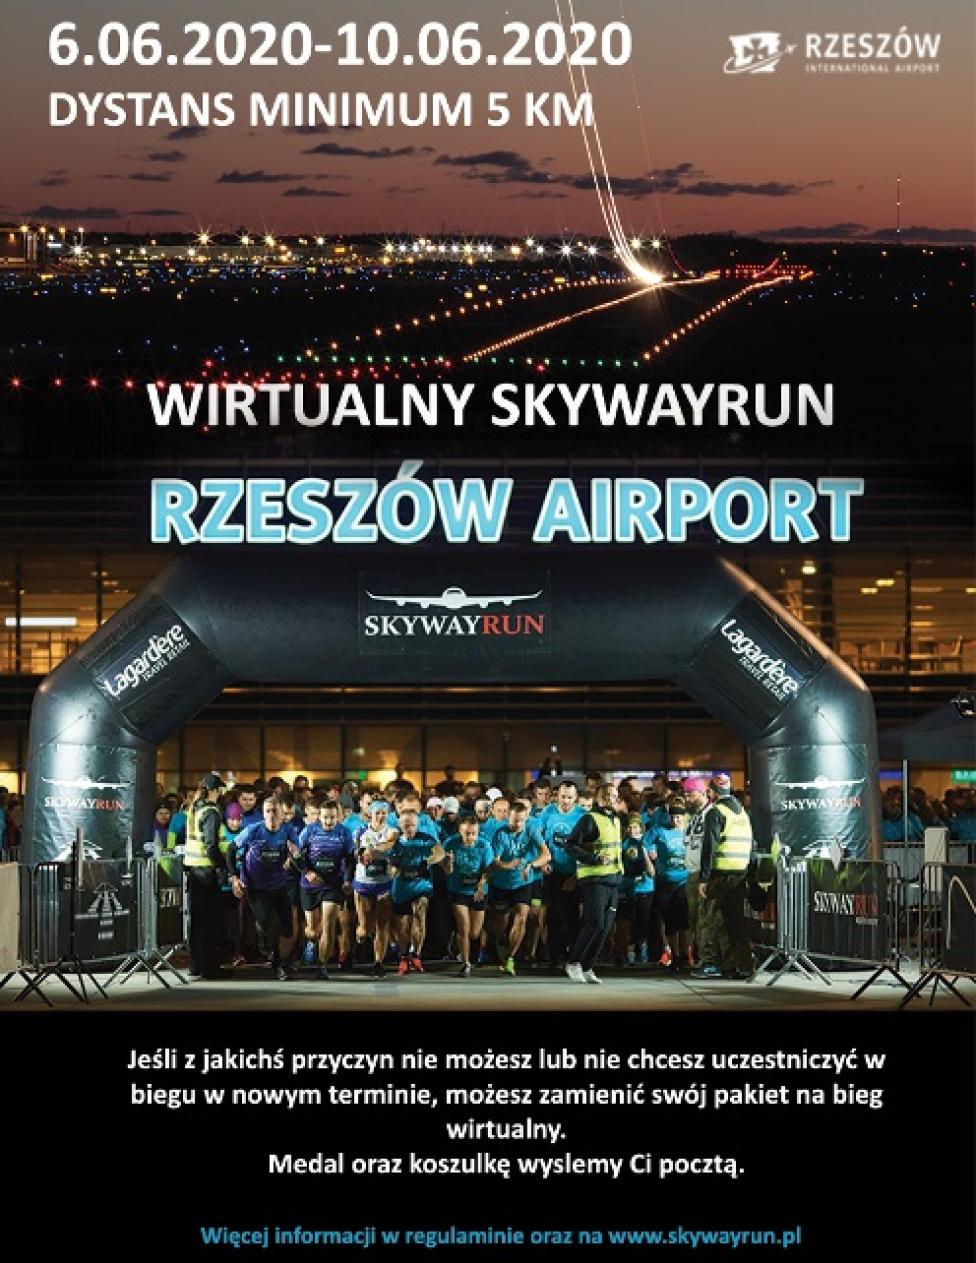 Wirtualny Skywayrun Rzeszów Airport (fot. monsterevent.pl)